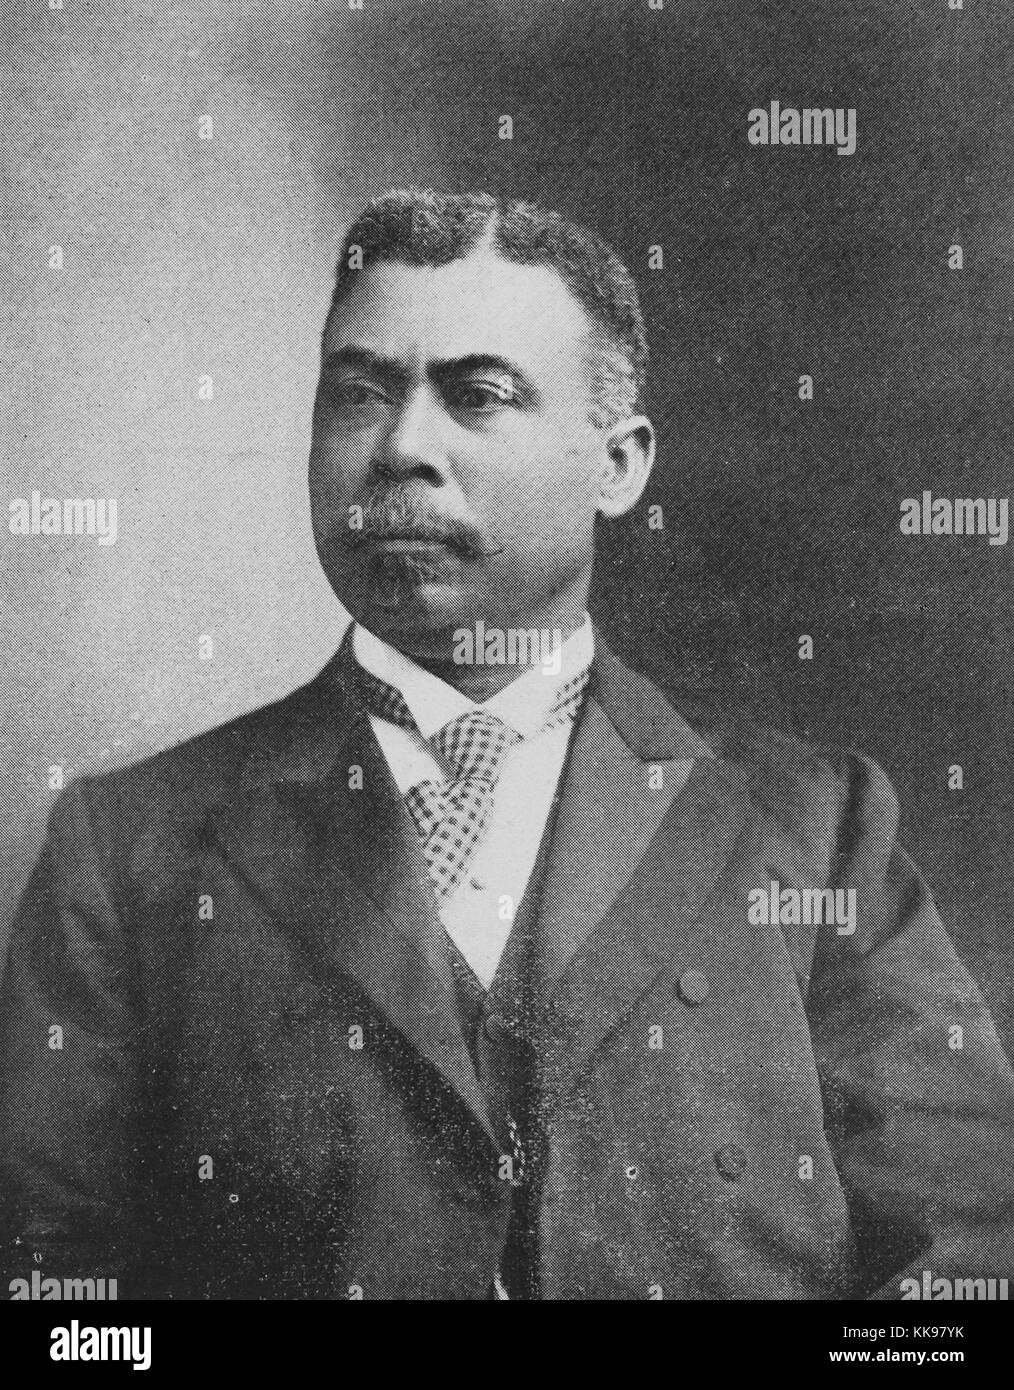 Schwarz-weiß-Porträt von Judson W Lyon, ein Absolvent der Howard University Law, der die erste Afro-amerikanische Rechtsanwalt in Georgien, 1902 wurde. Von der New York Public Library. Stockfoto